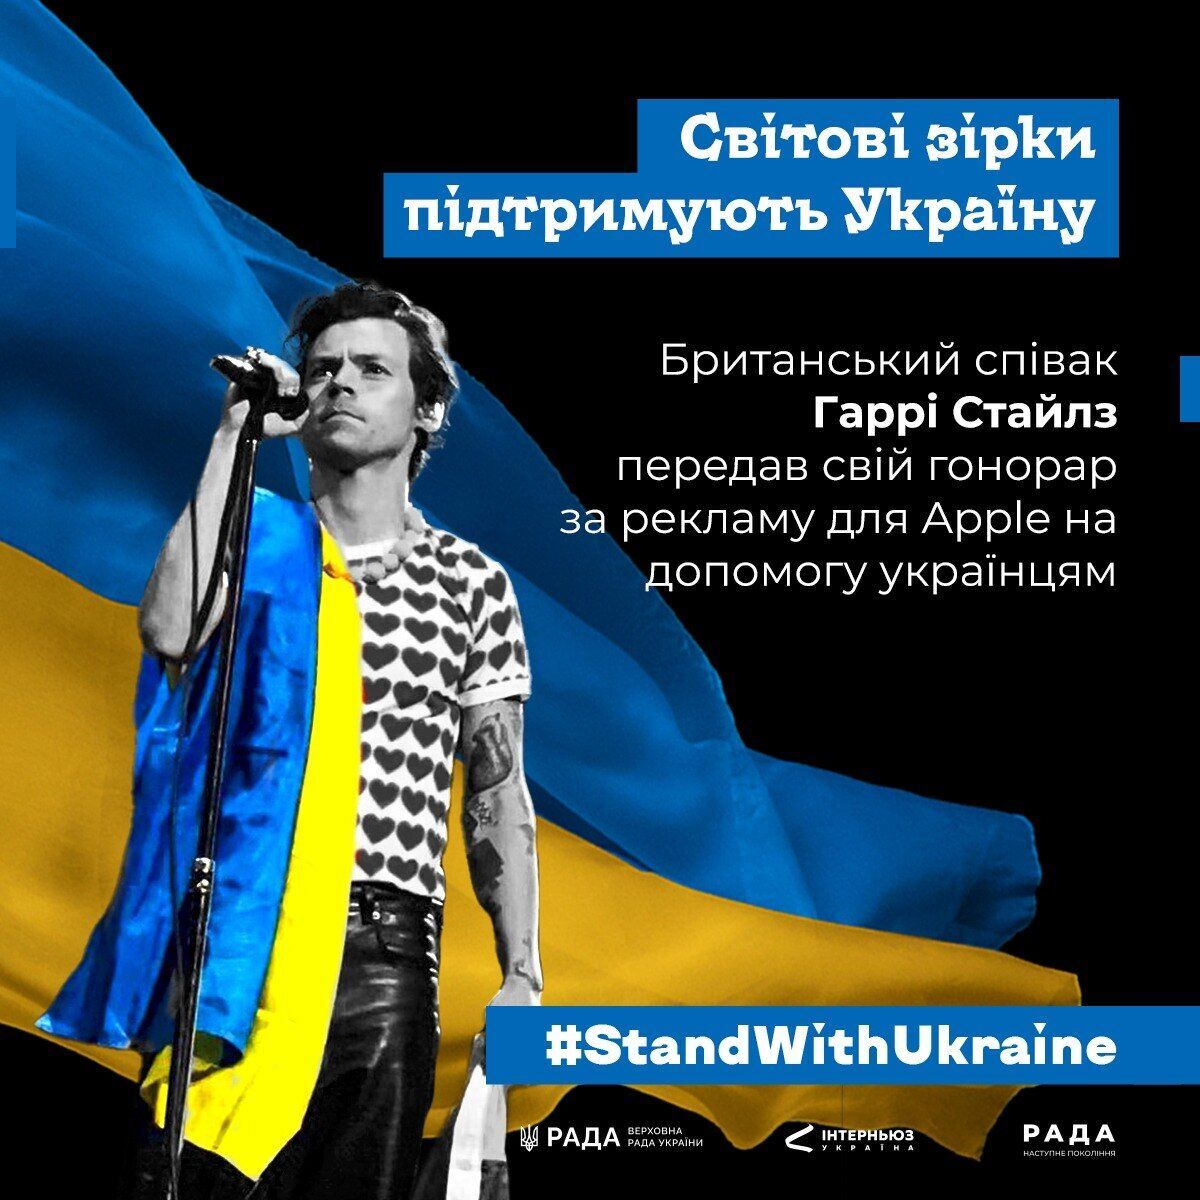 Гарри Стайлз на сцене поднял украинский флаг: зал "взорвался" овациями и криками